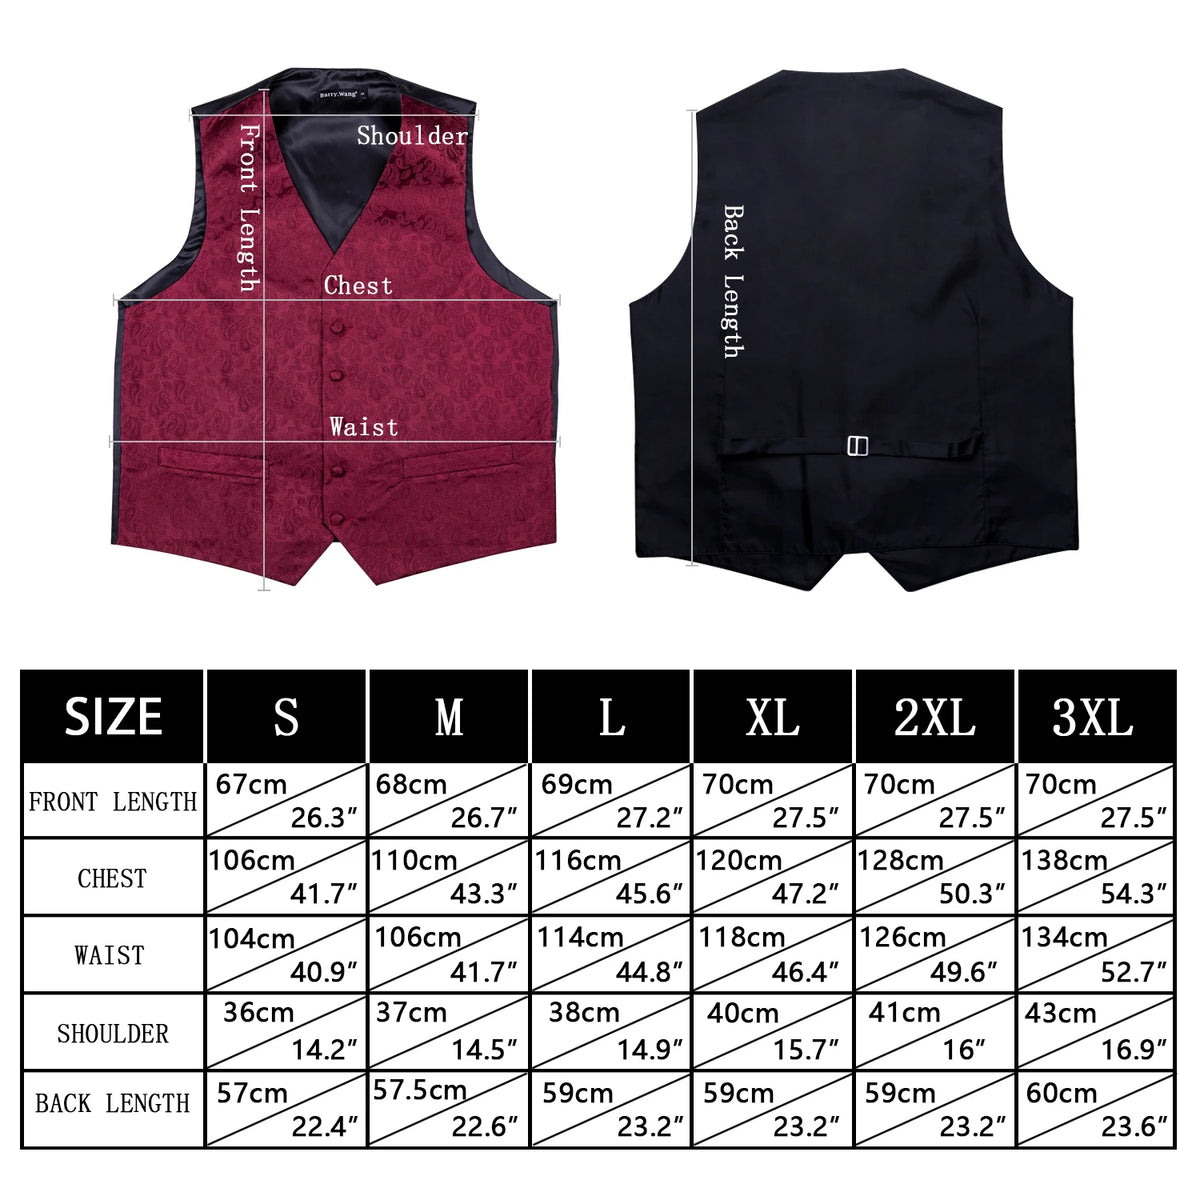 a size guide for a men's vest